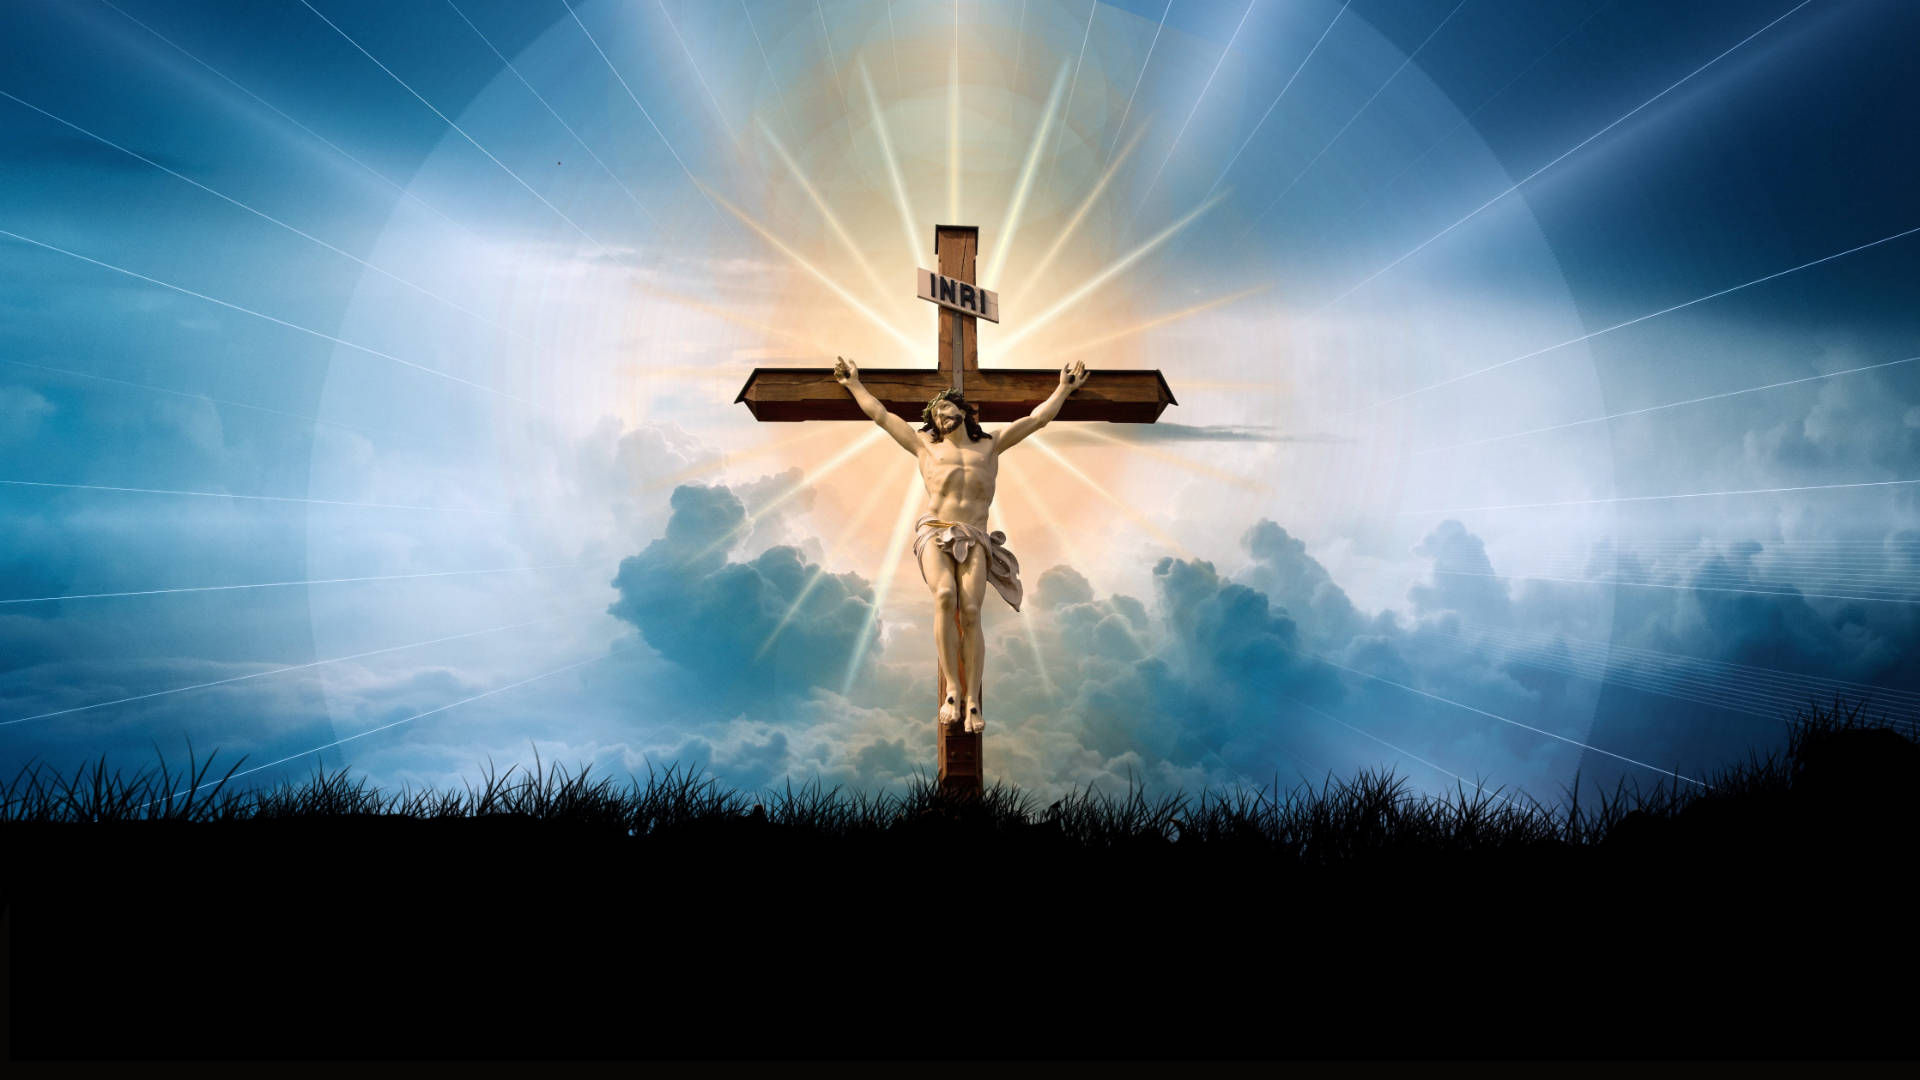 Free Jesus On Cross Wallpaper Downloads, [100+] Jesus On Cross Wallpapers  for FREE 